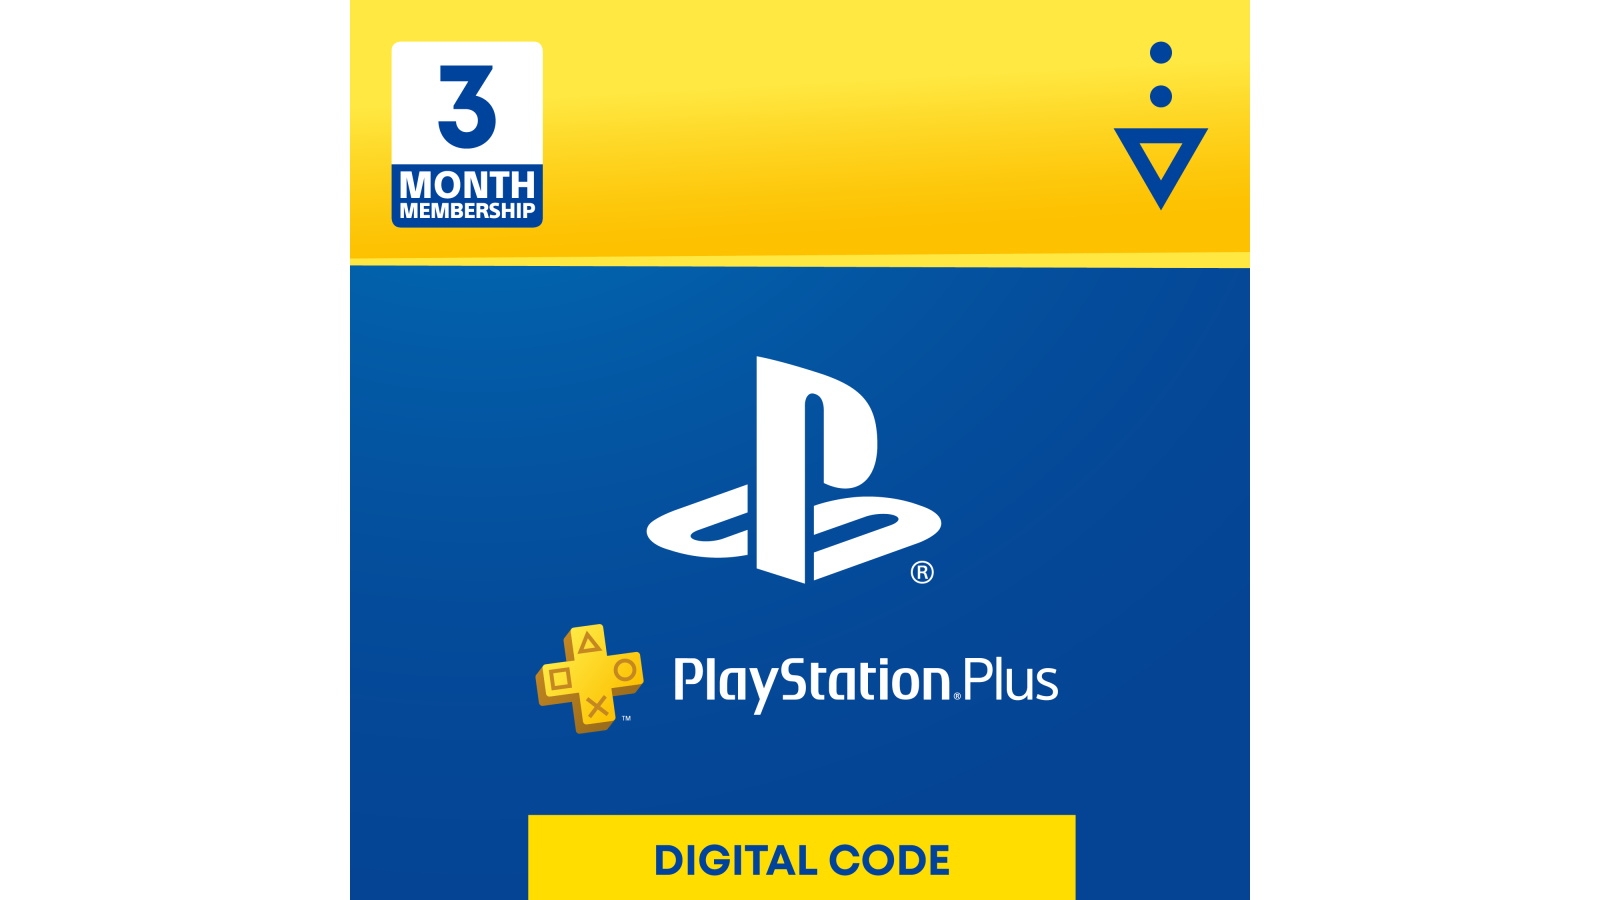 Buy Playstation Plus Electronic Voucher 3 Months Subscription Harvey Norman Au